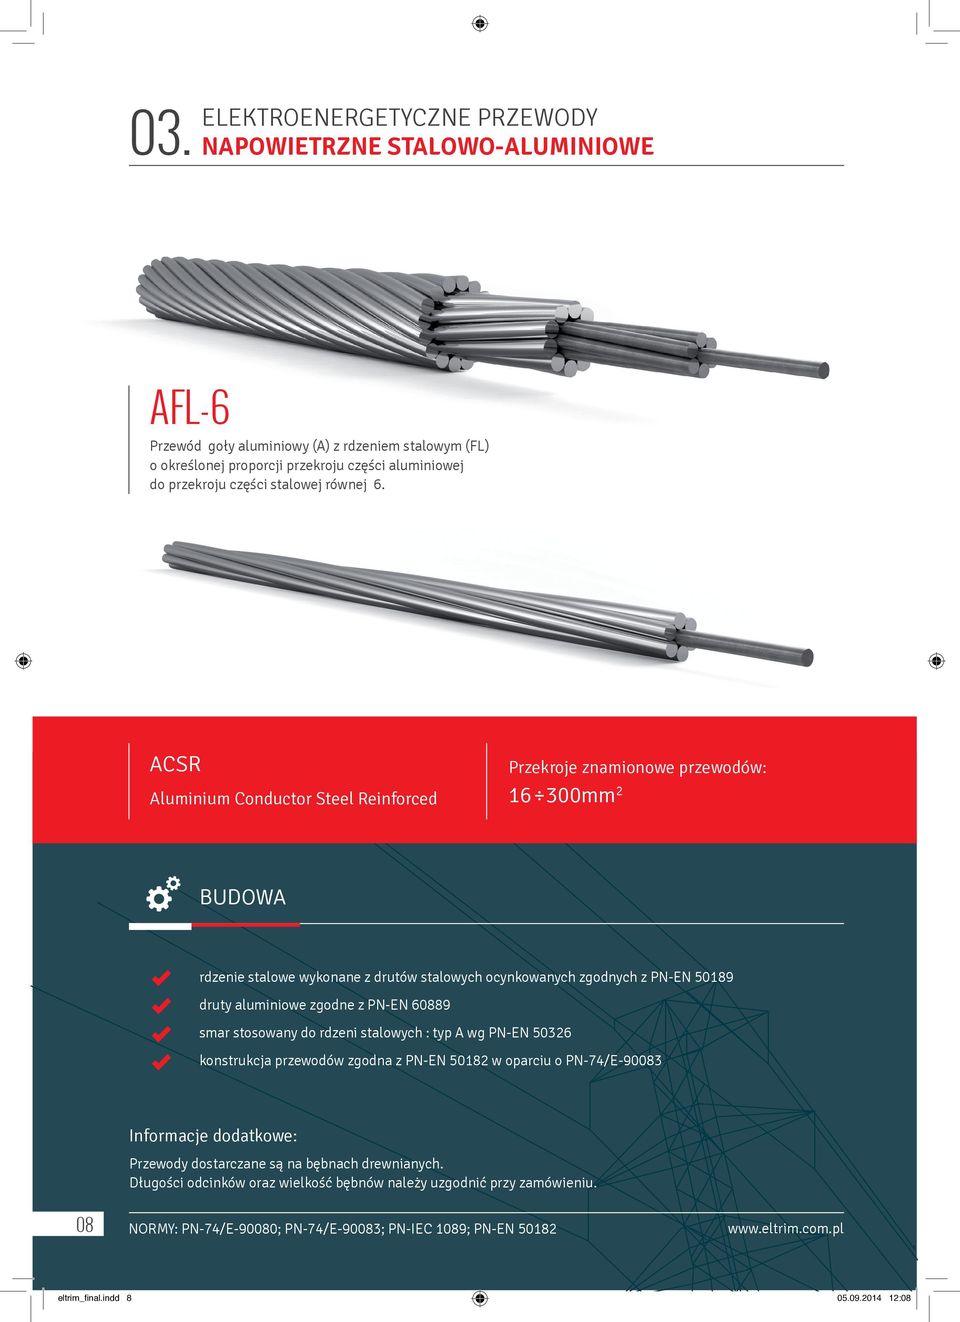 ACSR Aluminium Conductor Steel Reinforced Przekroje znamionowe przewodów: 16 300mm 2 BUDOWA rdzenie stalowe wykonane z drutów stalowych ocynkowanych zgodnych z PN-EN 50189 druty aluminiowe zgodne z